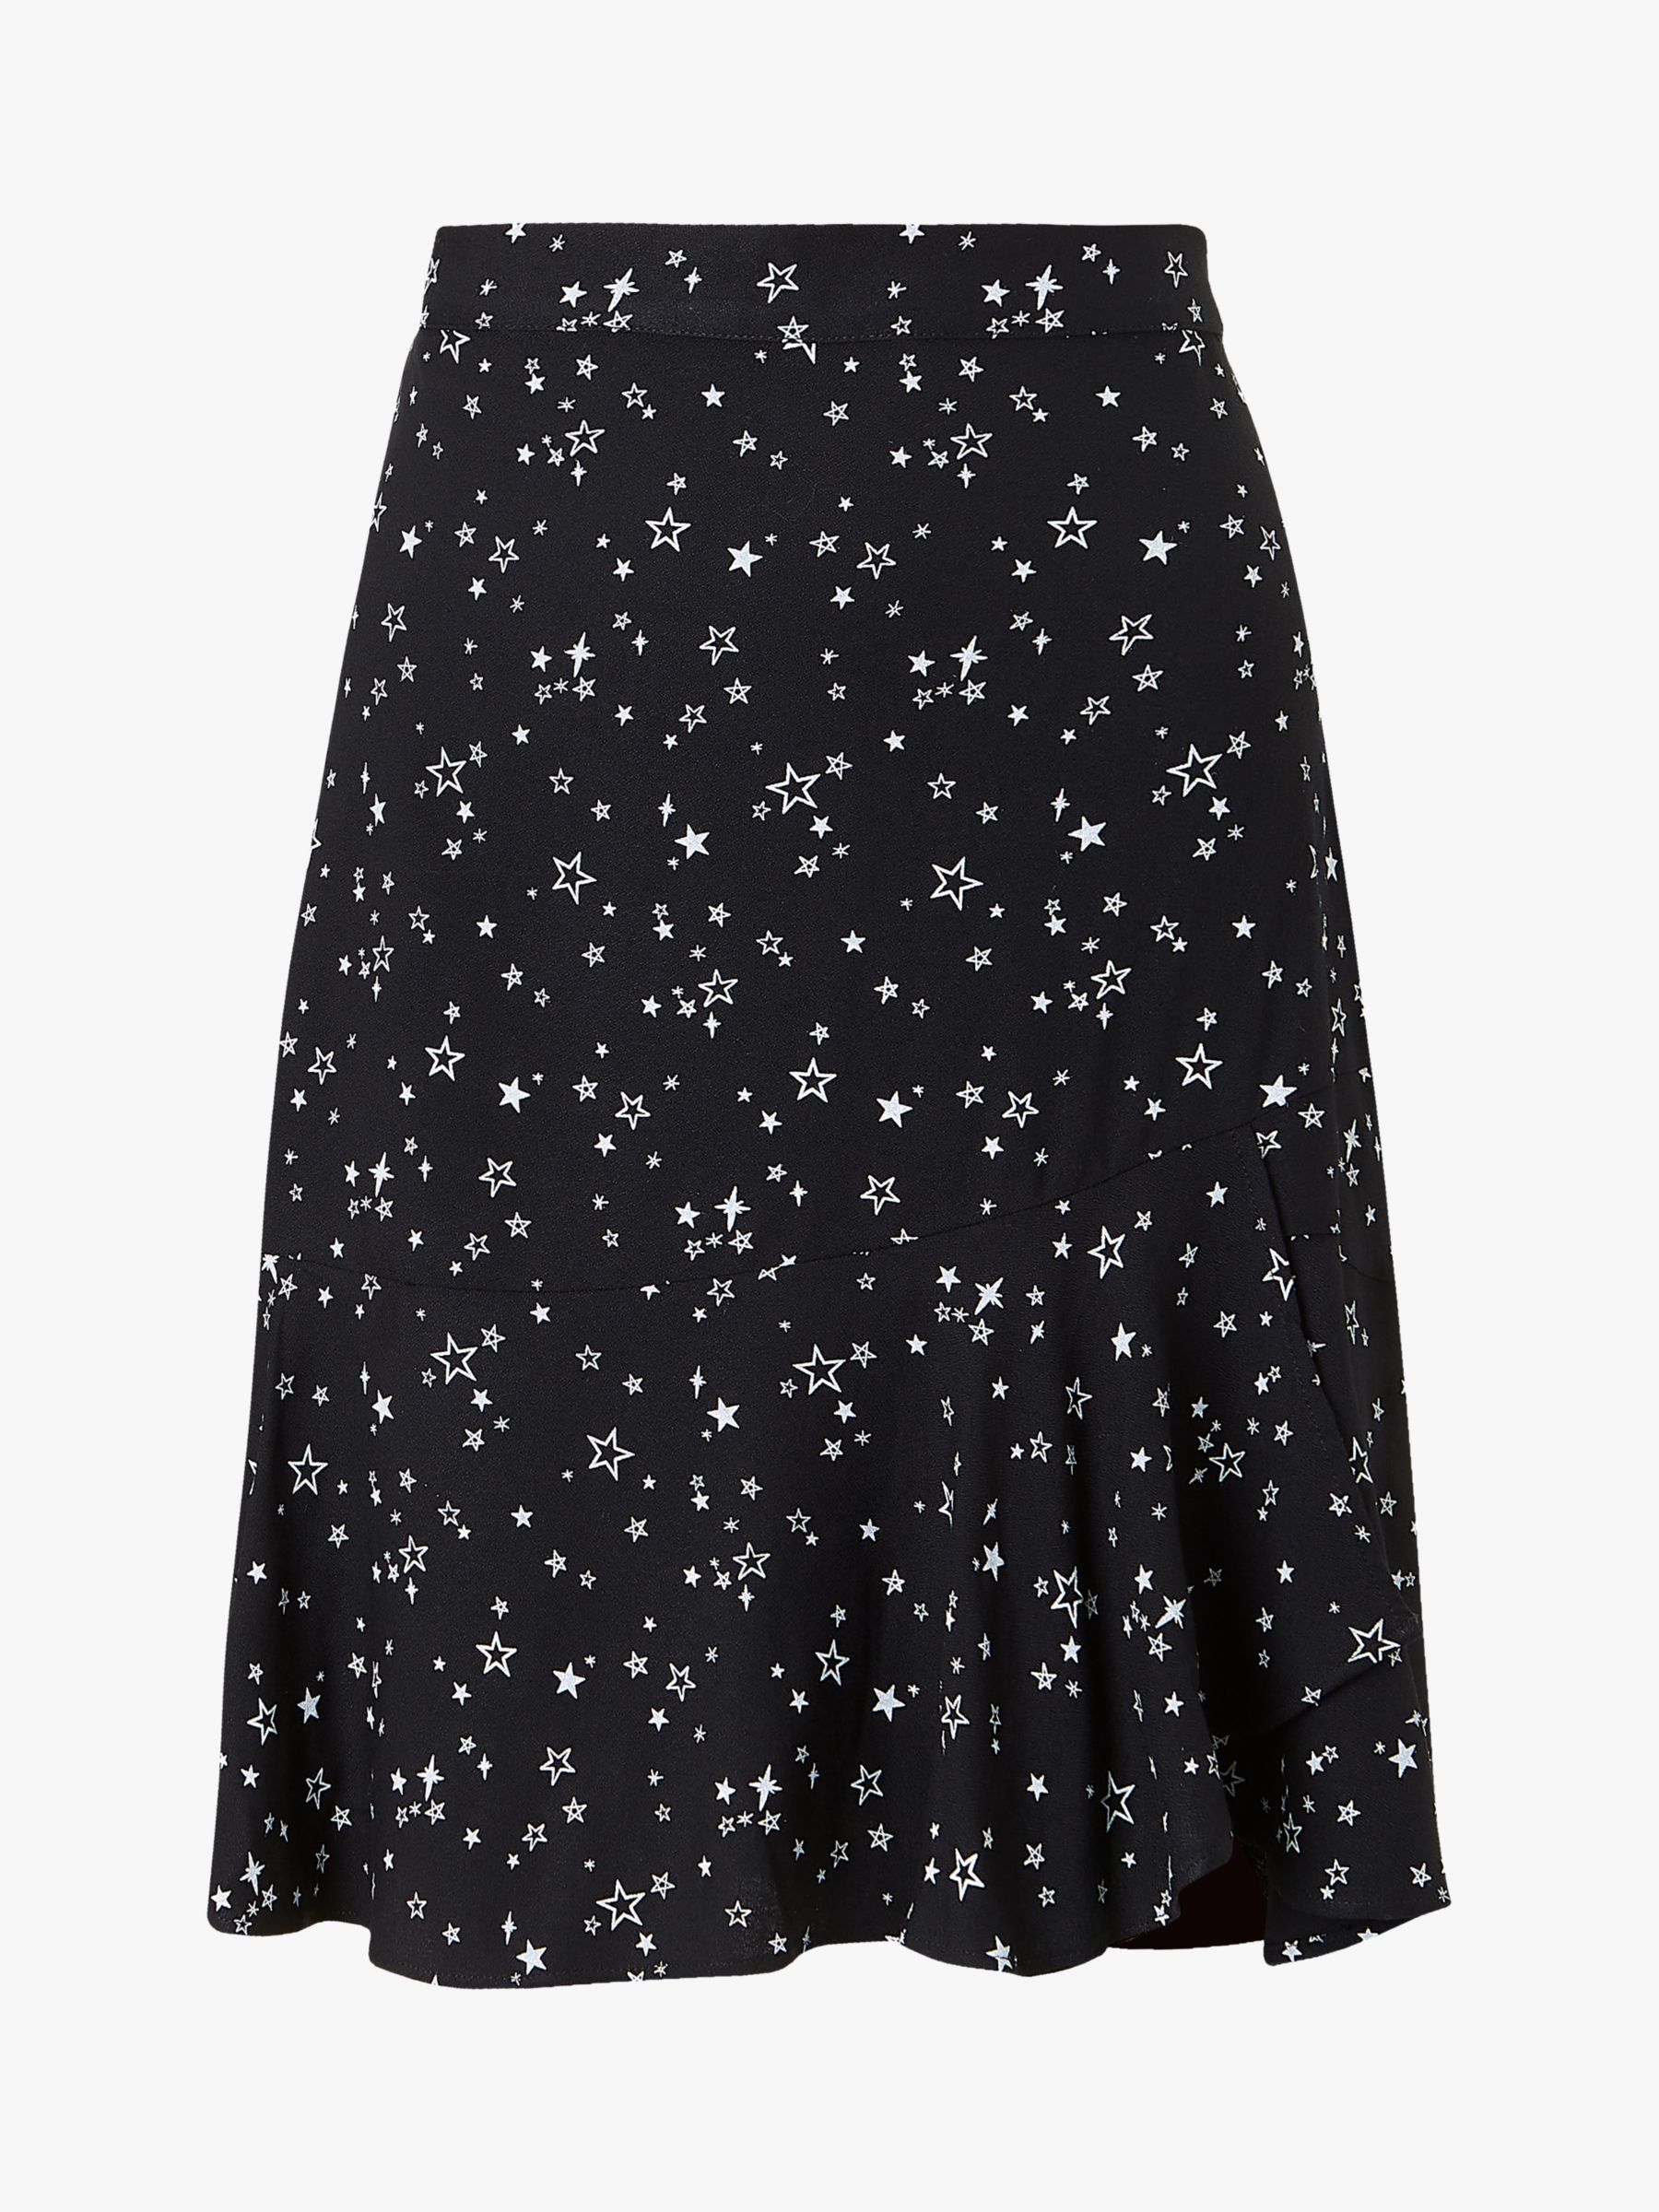 Baukjen Isabella Star Print Skirt, Black at John Lewis & Partners